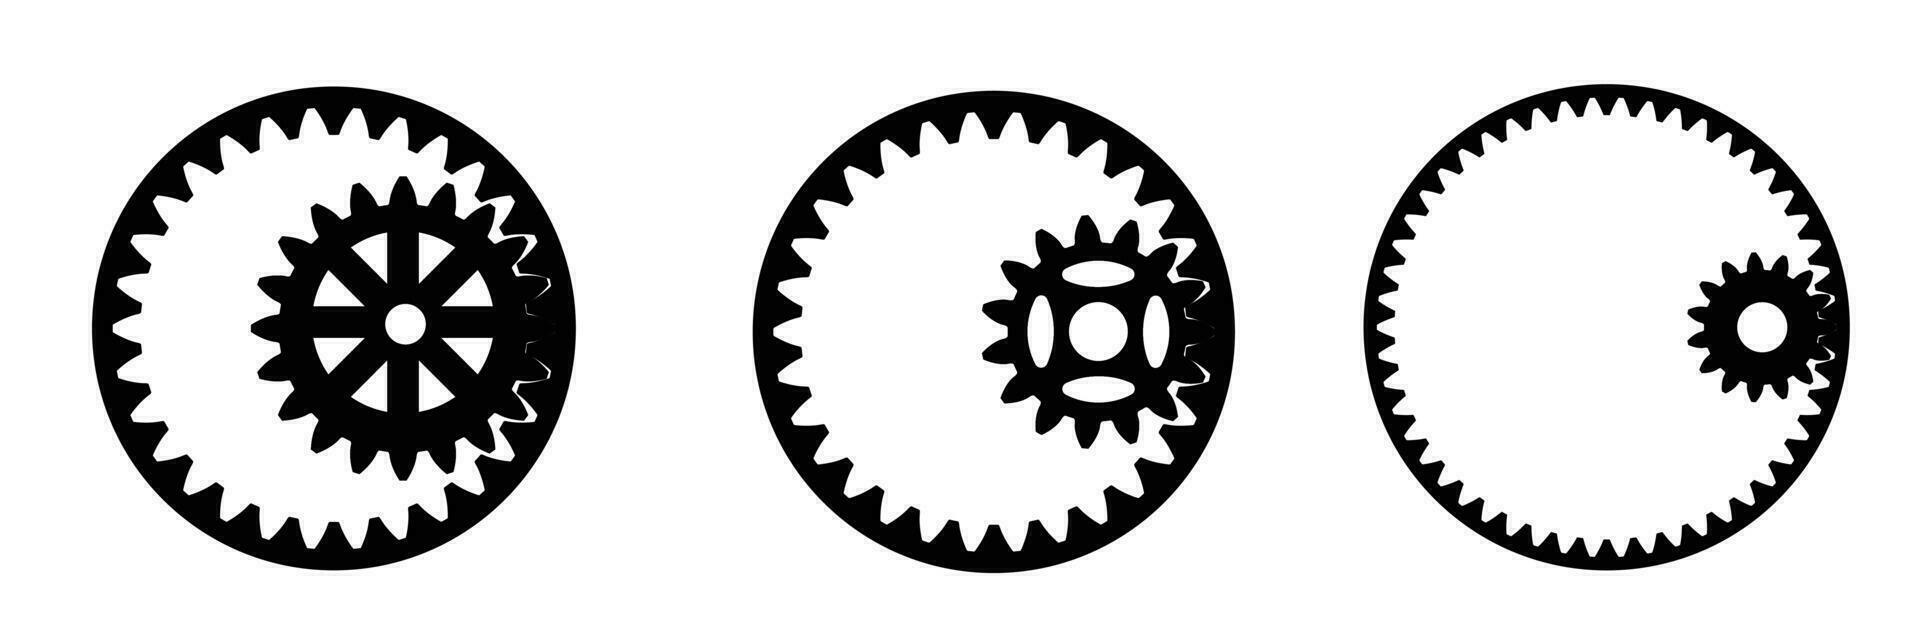 vektor illustration. uppsättning ikoner svart mekanisk kugghjul på en vit bakgrund. konturerad silhuett